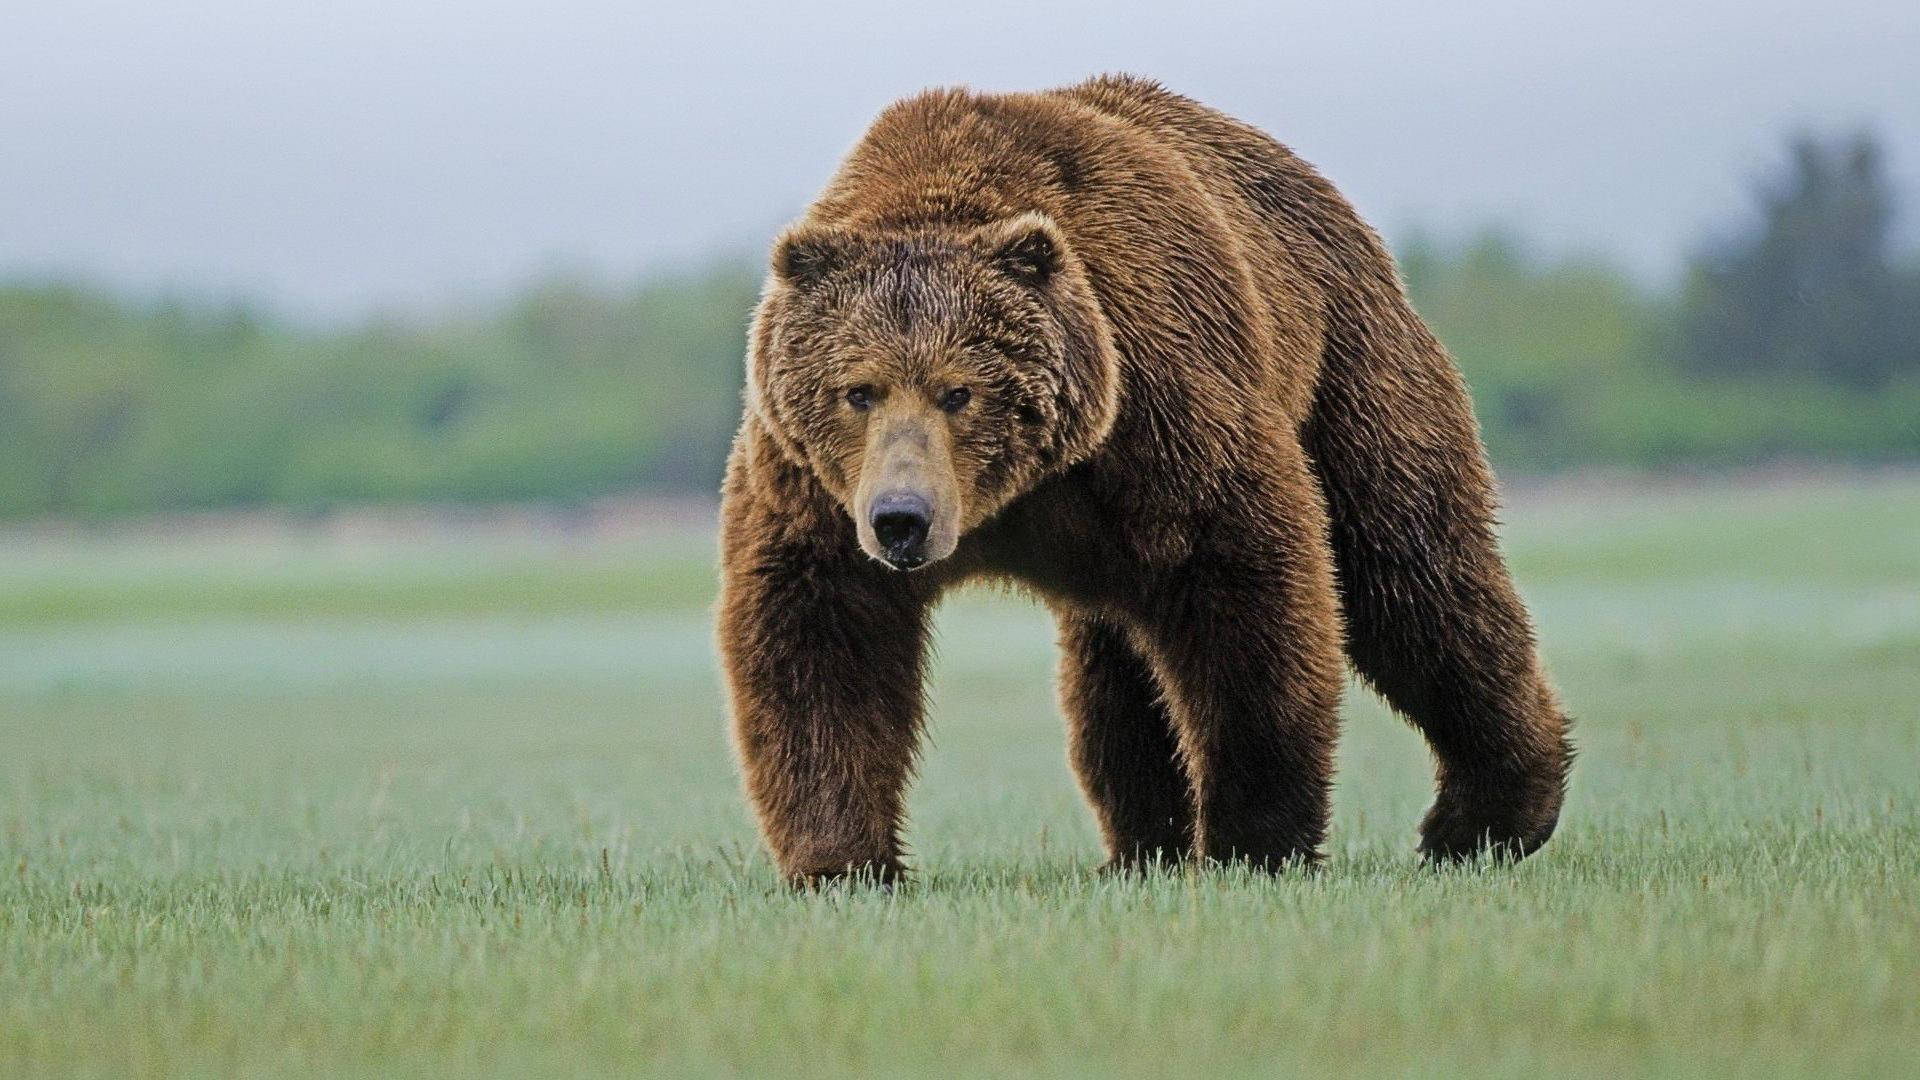 Brown Bear Walking On Grass Field Wallpaper